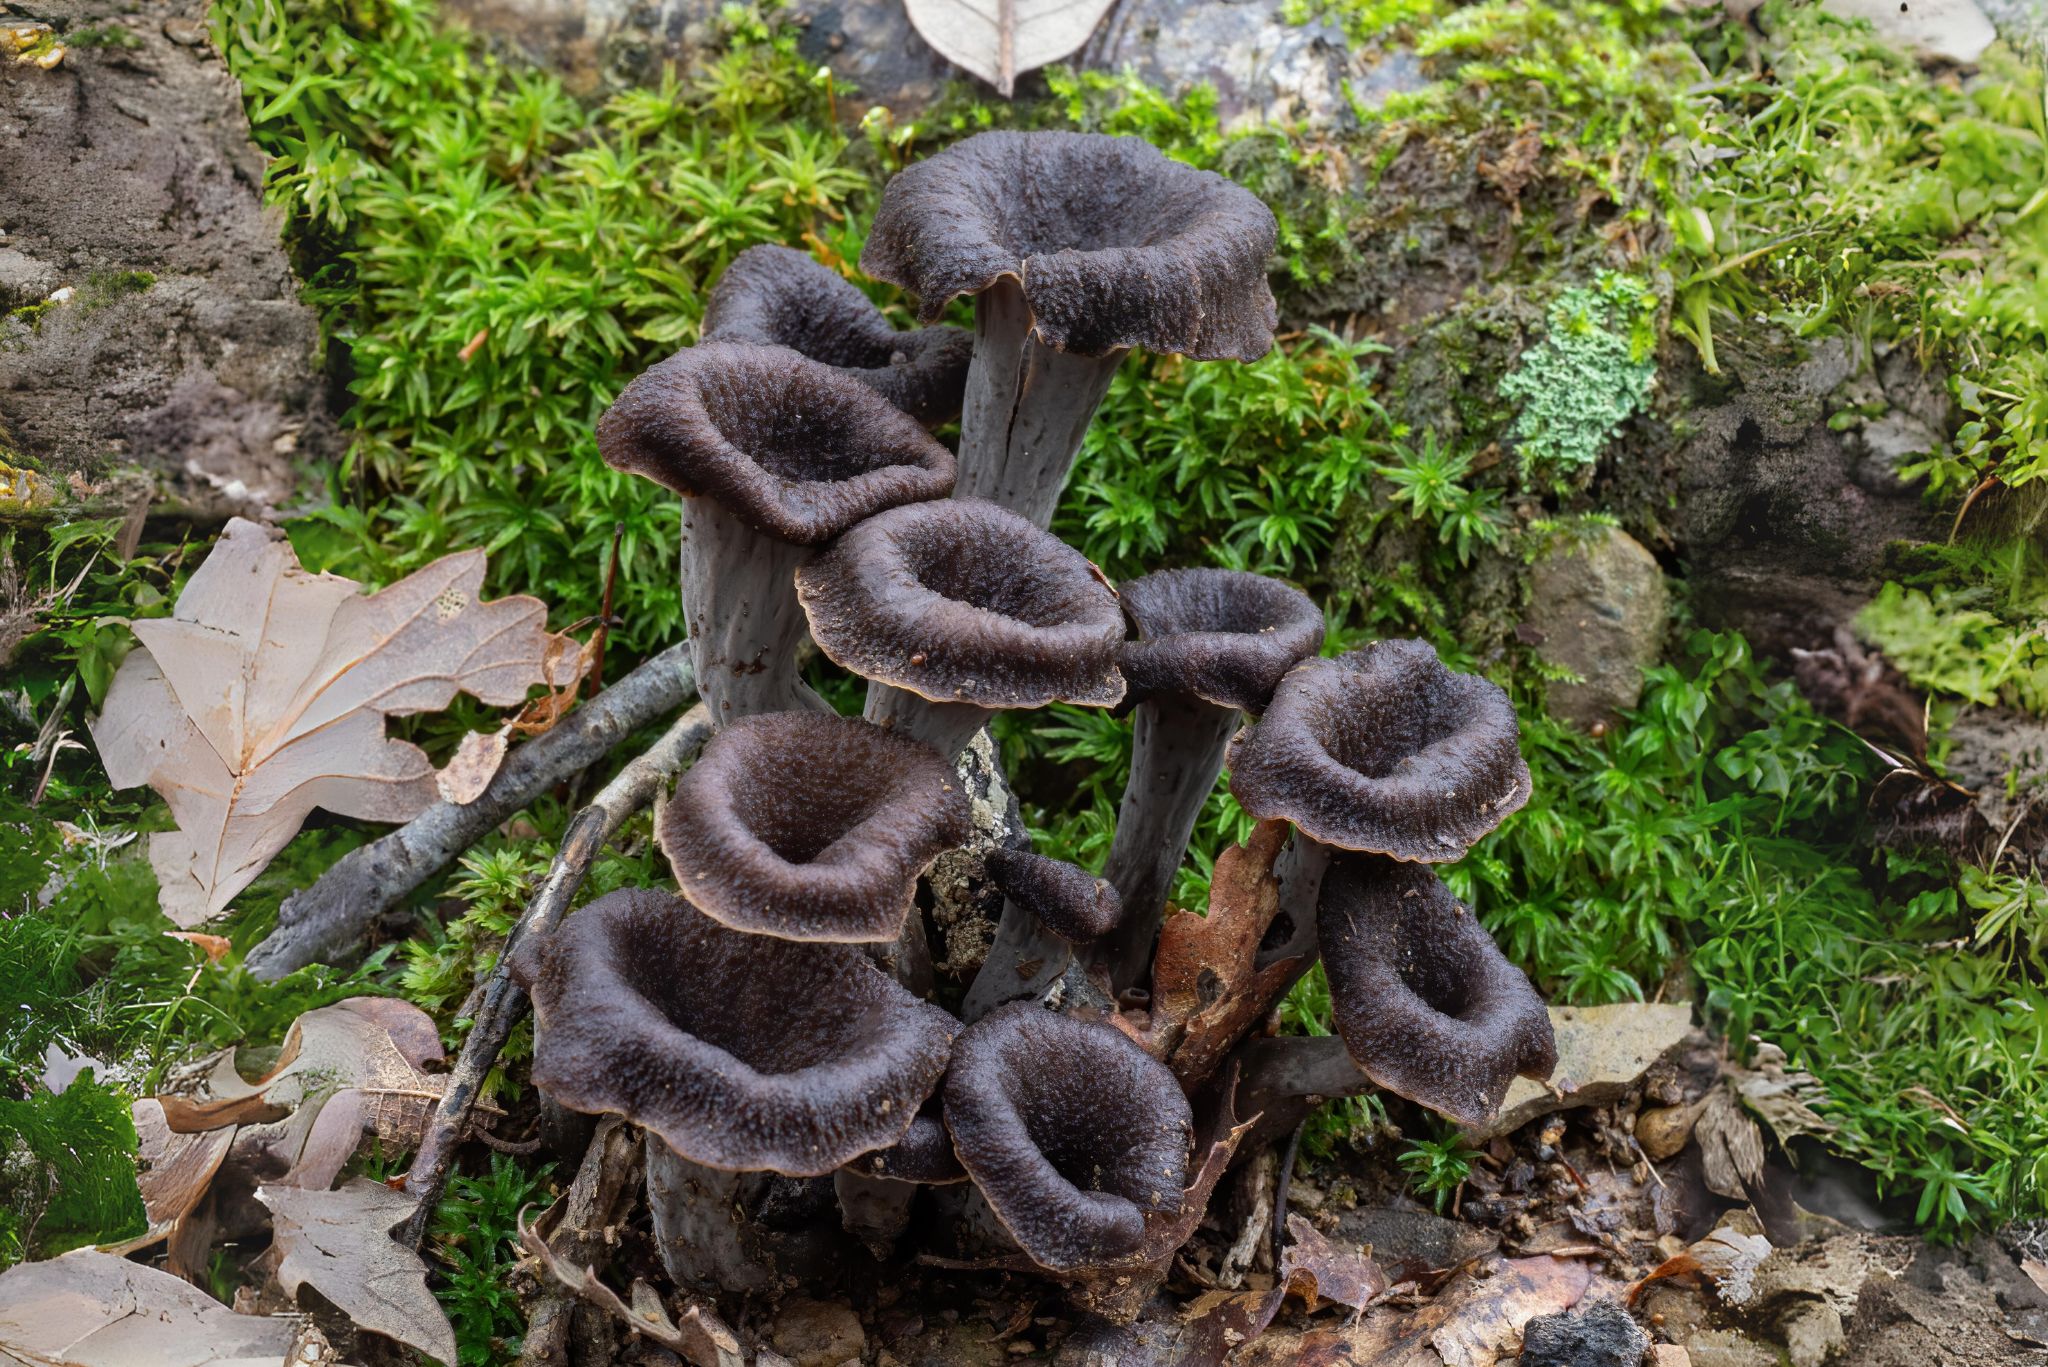 Black trumpet mushrooms in garden